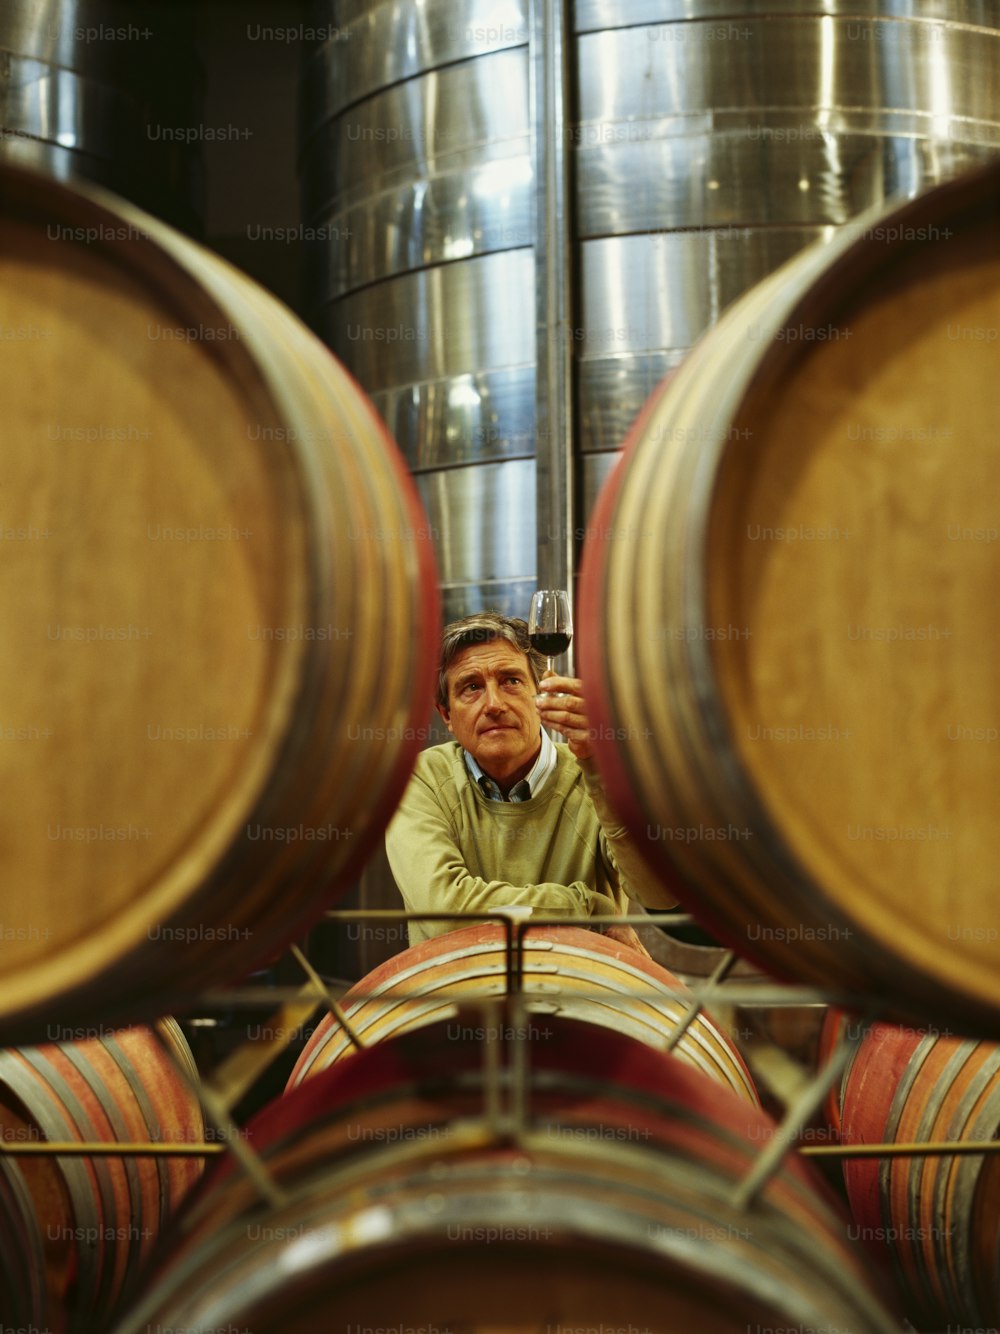 Un uomo seduto davanti a un mazzo di botti di vino